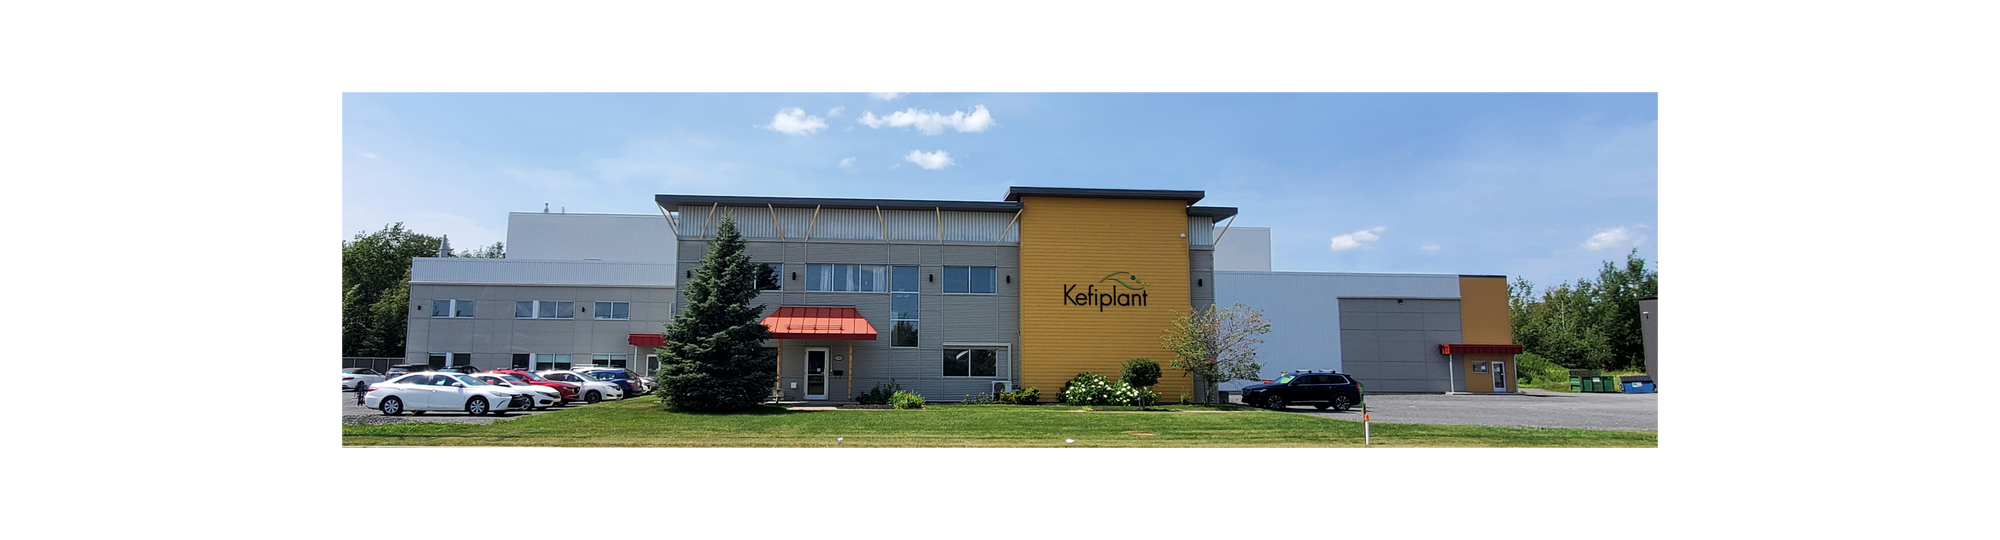 Kefiplant and Biora's building in Drummondville, Québec